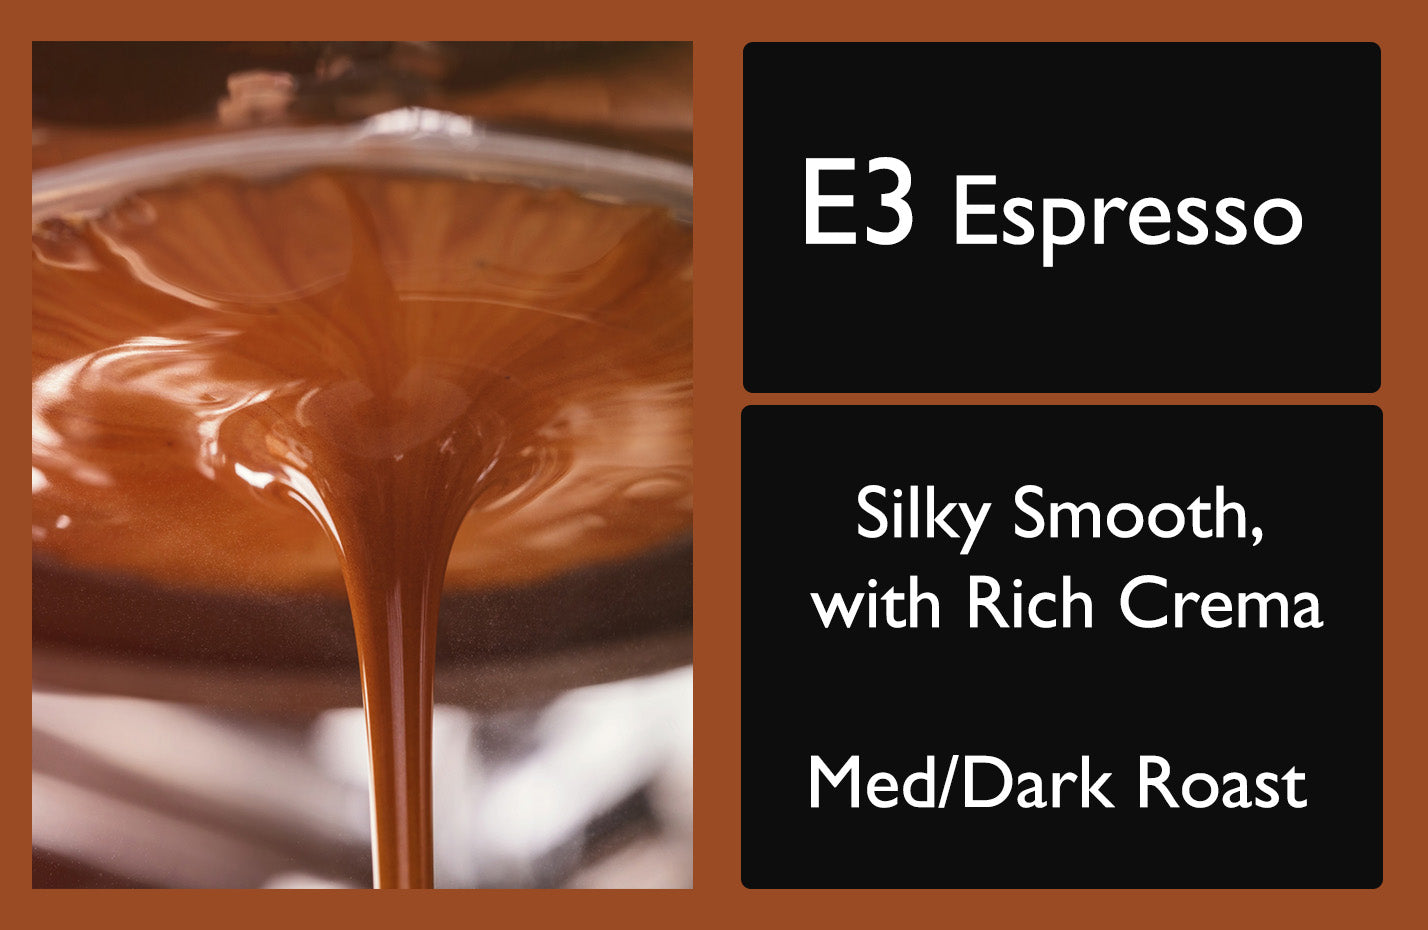 Picture of a bag of E3 Espresso Coffee